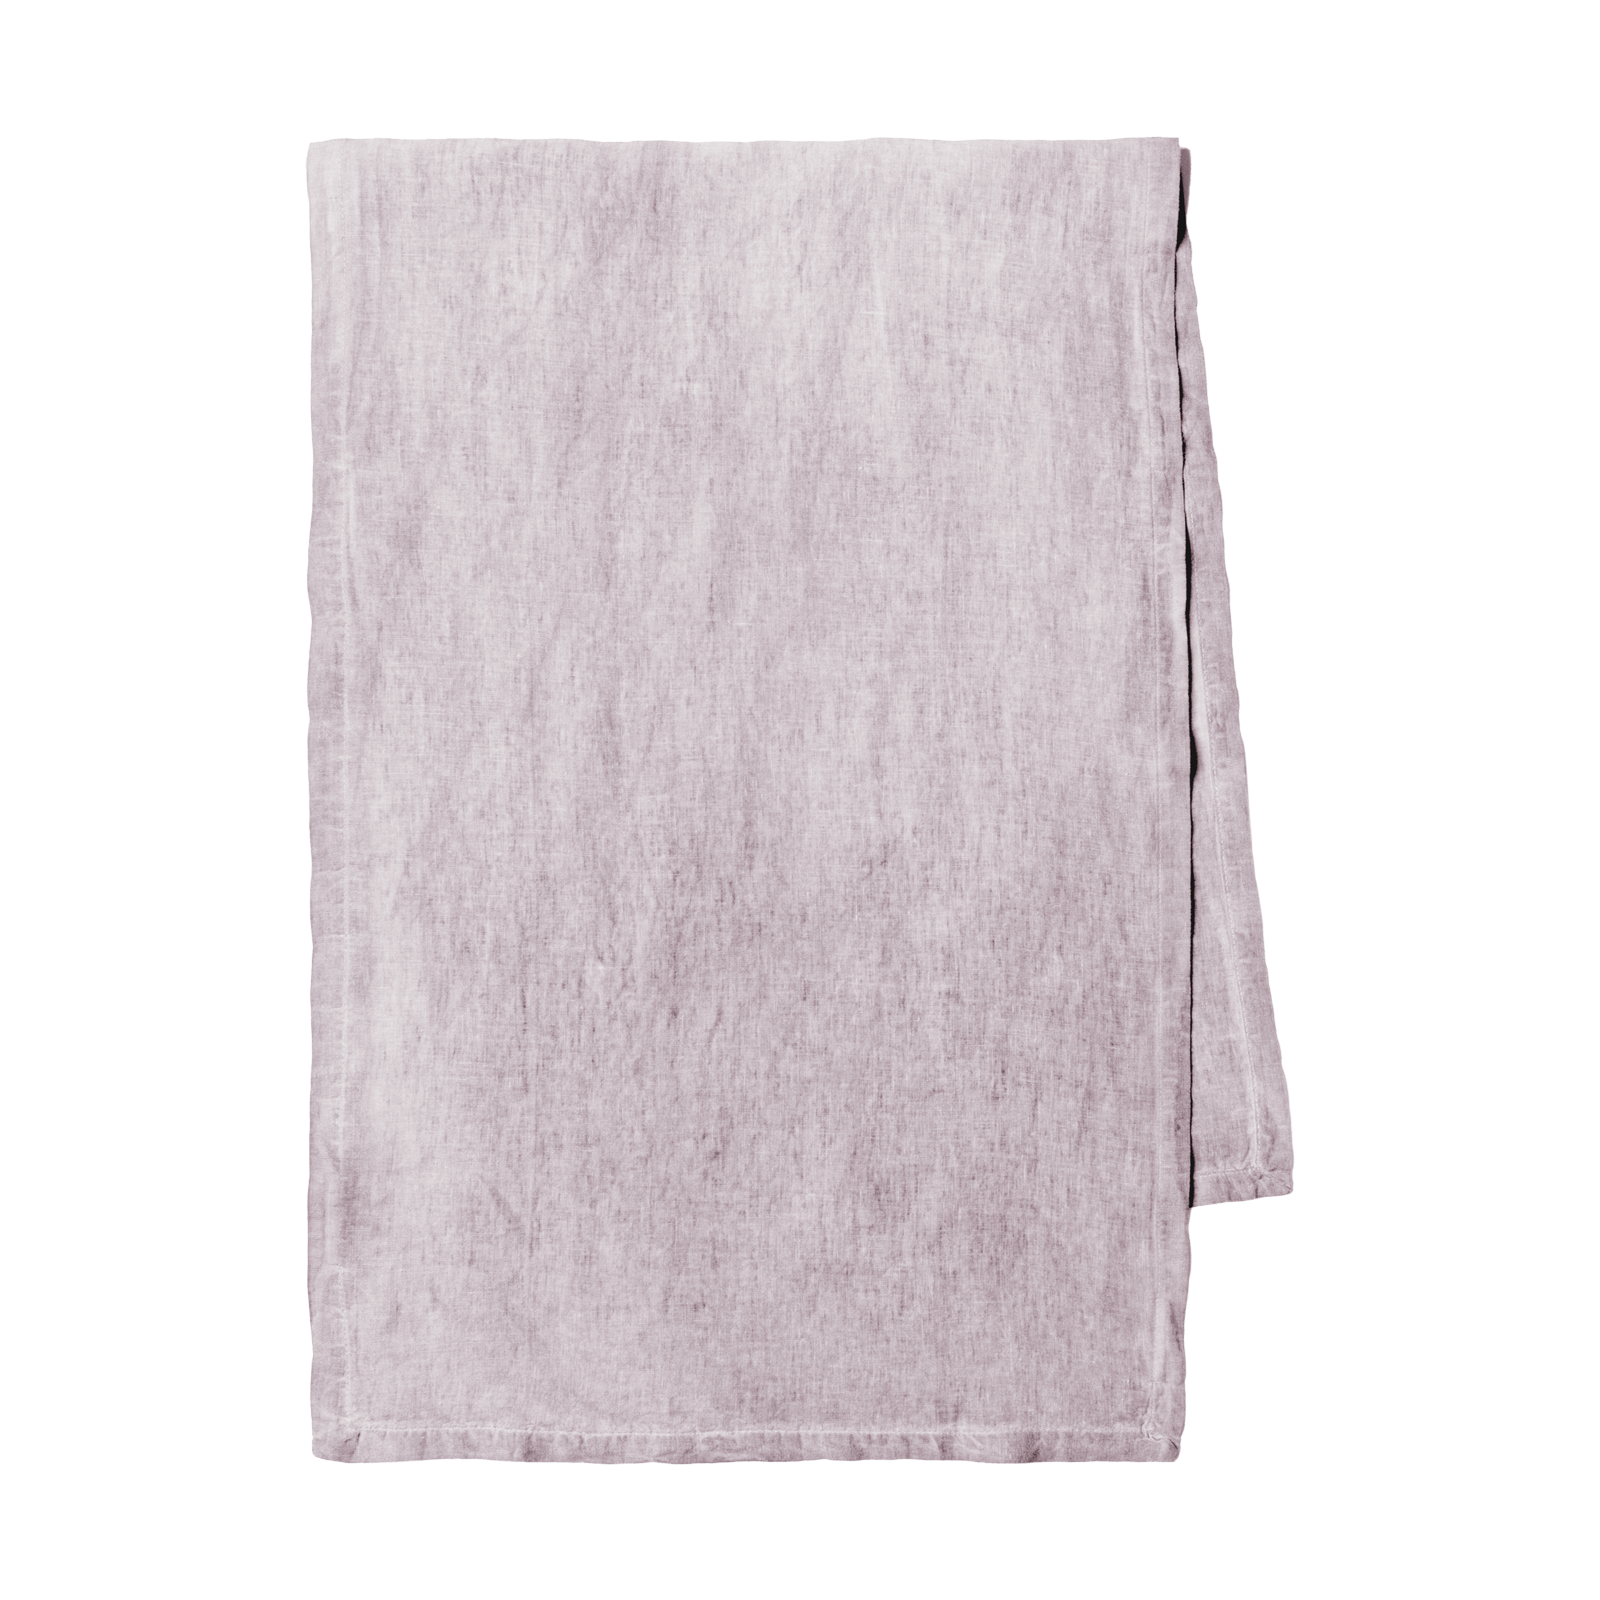 Größe: 50x 150 cm Farbe: lavendel #farbe_lavendel